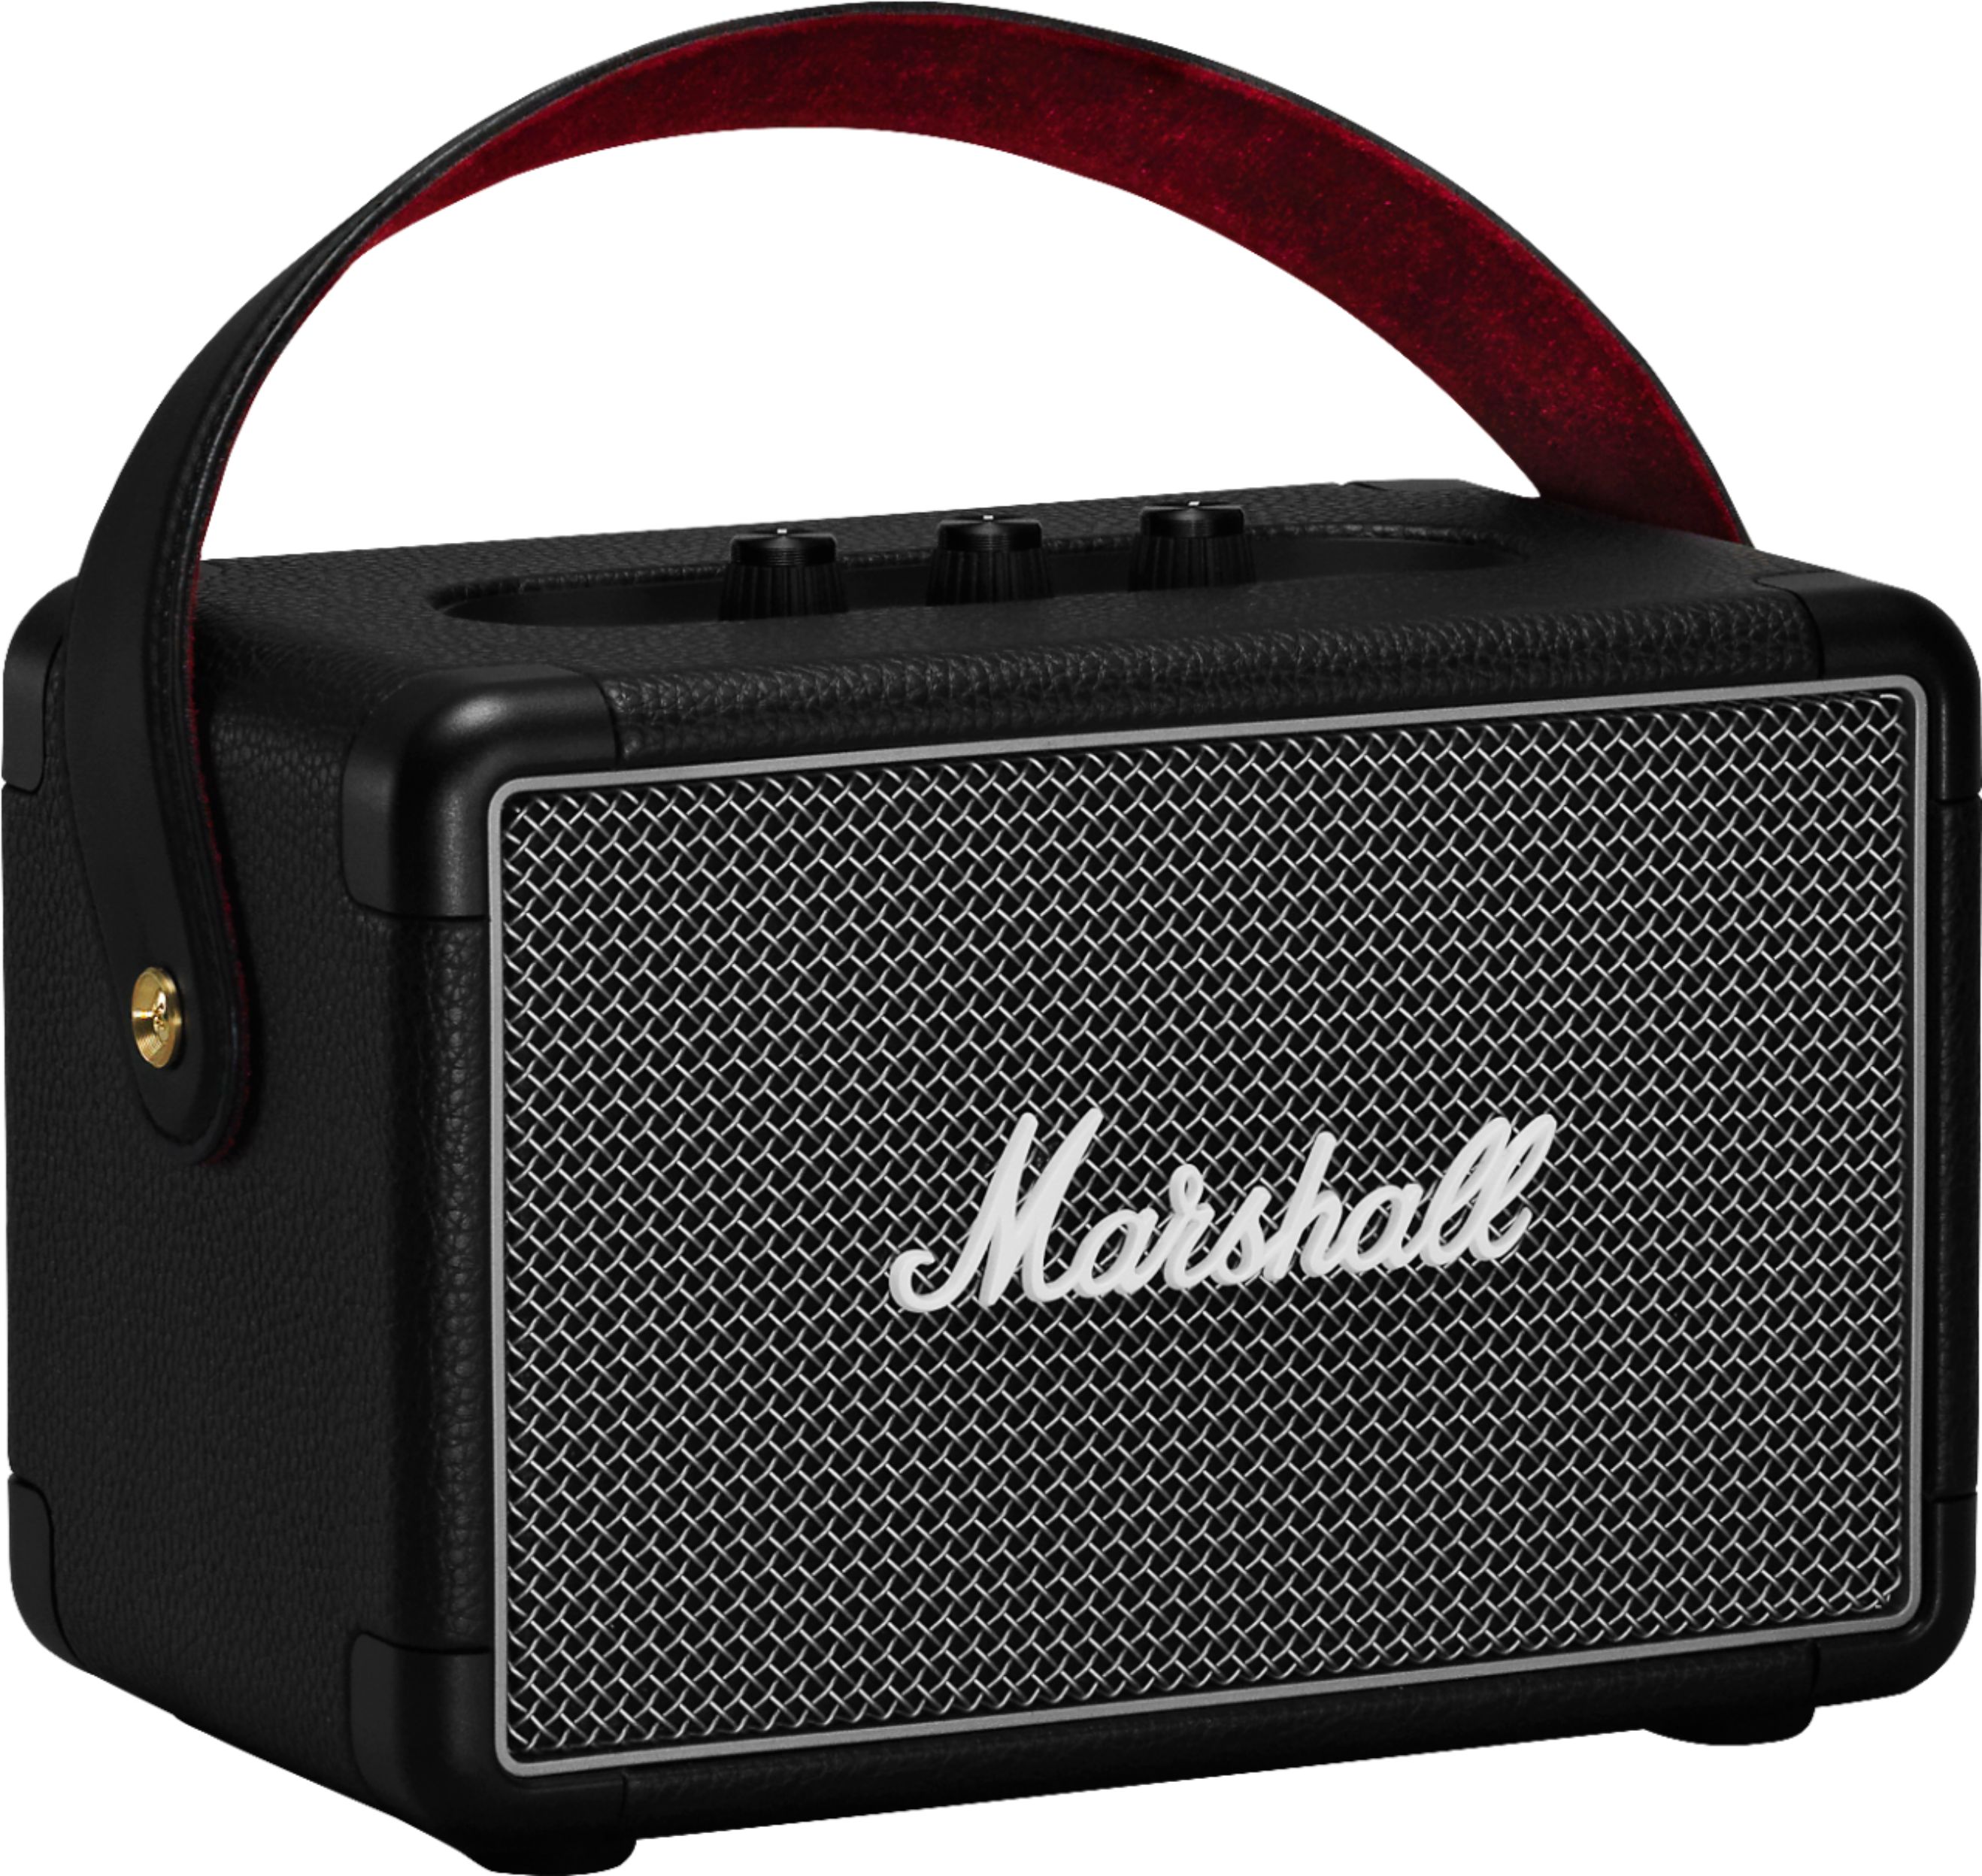 Angle View: Marshall - Kilburn II Portable Bluetooth Speaker - Black